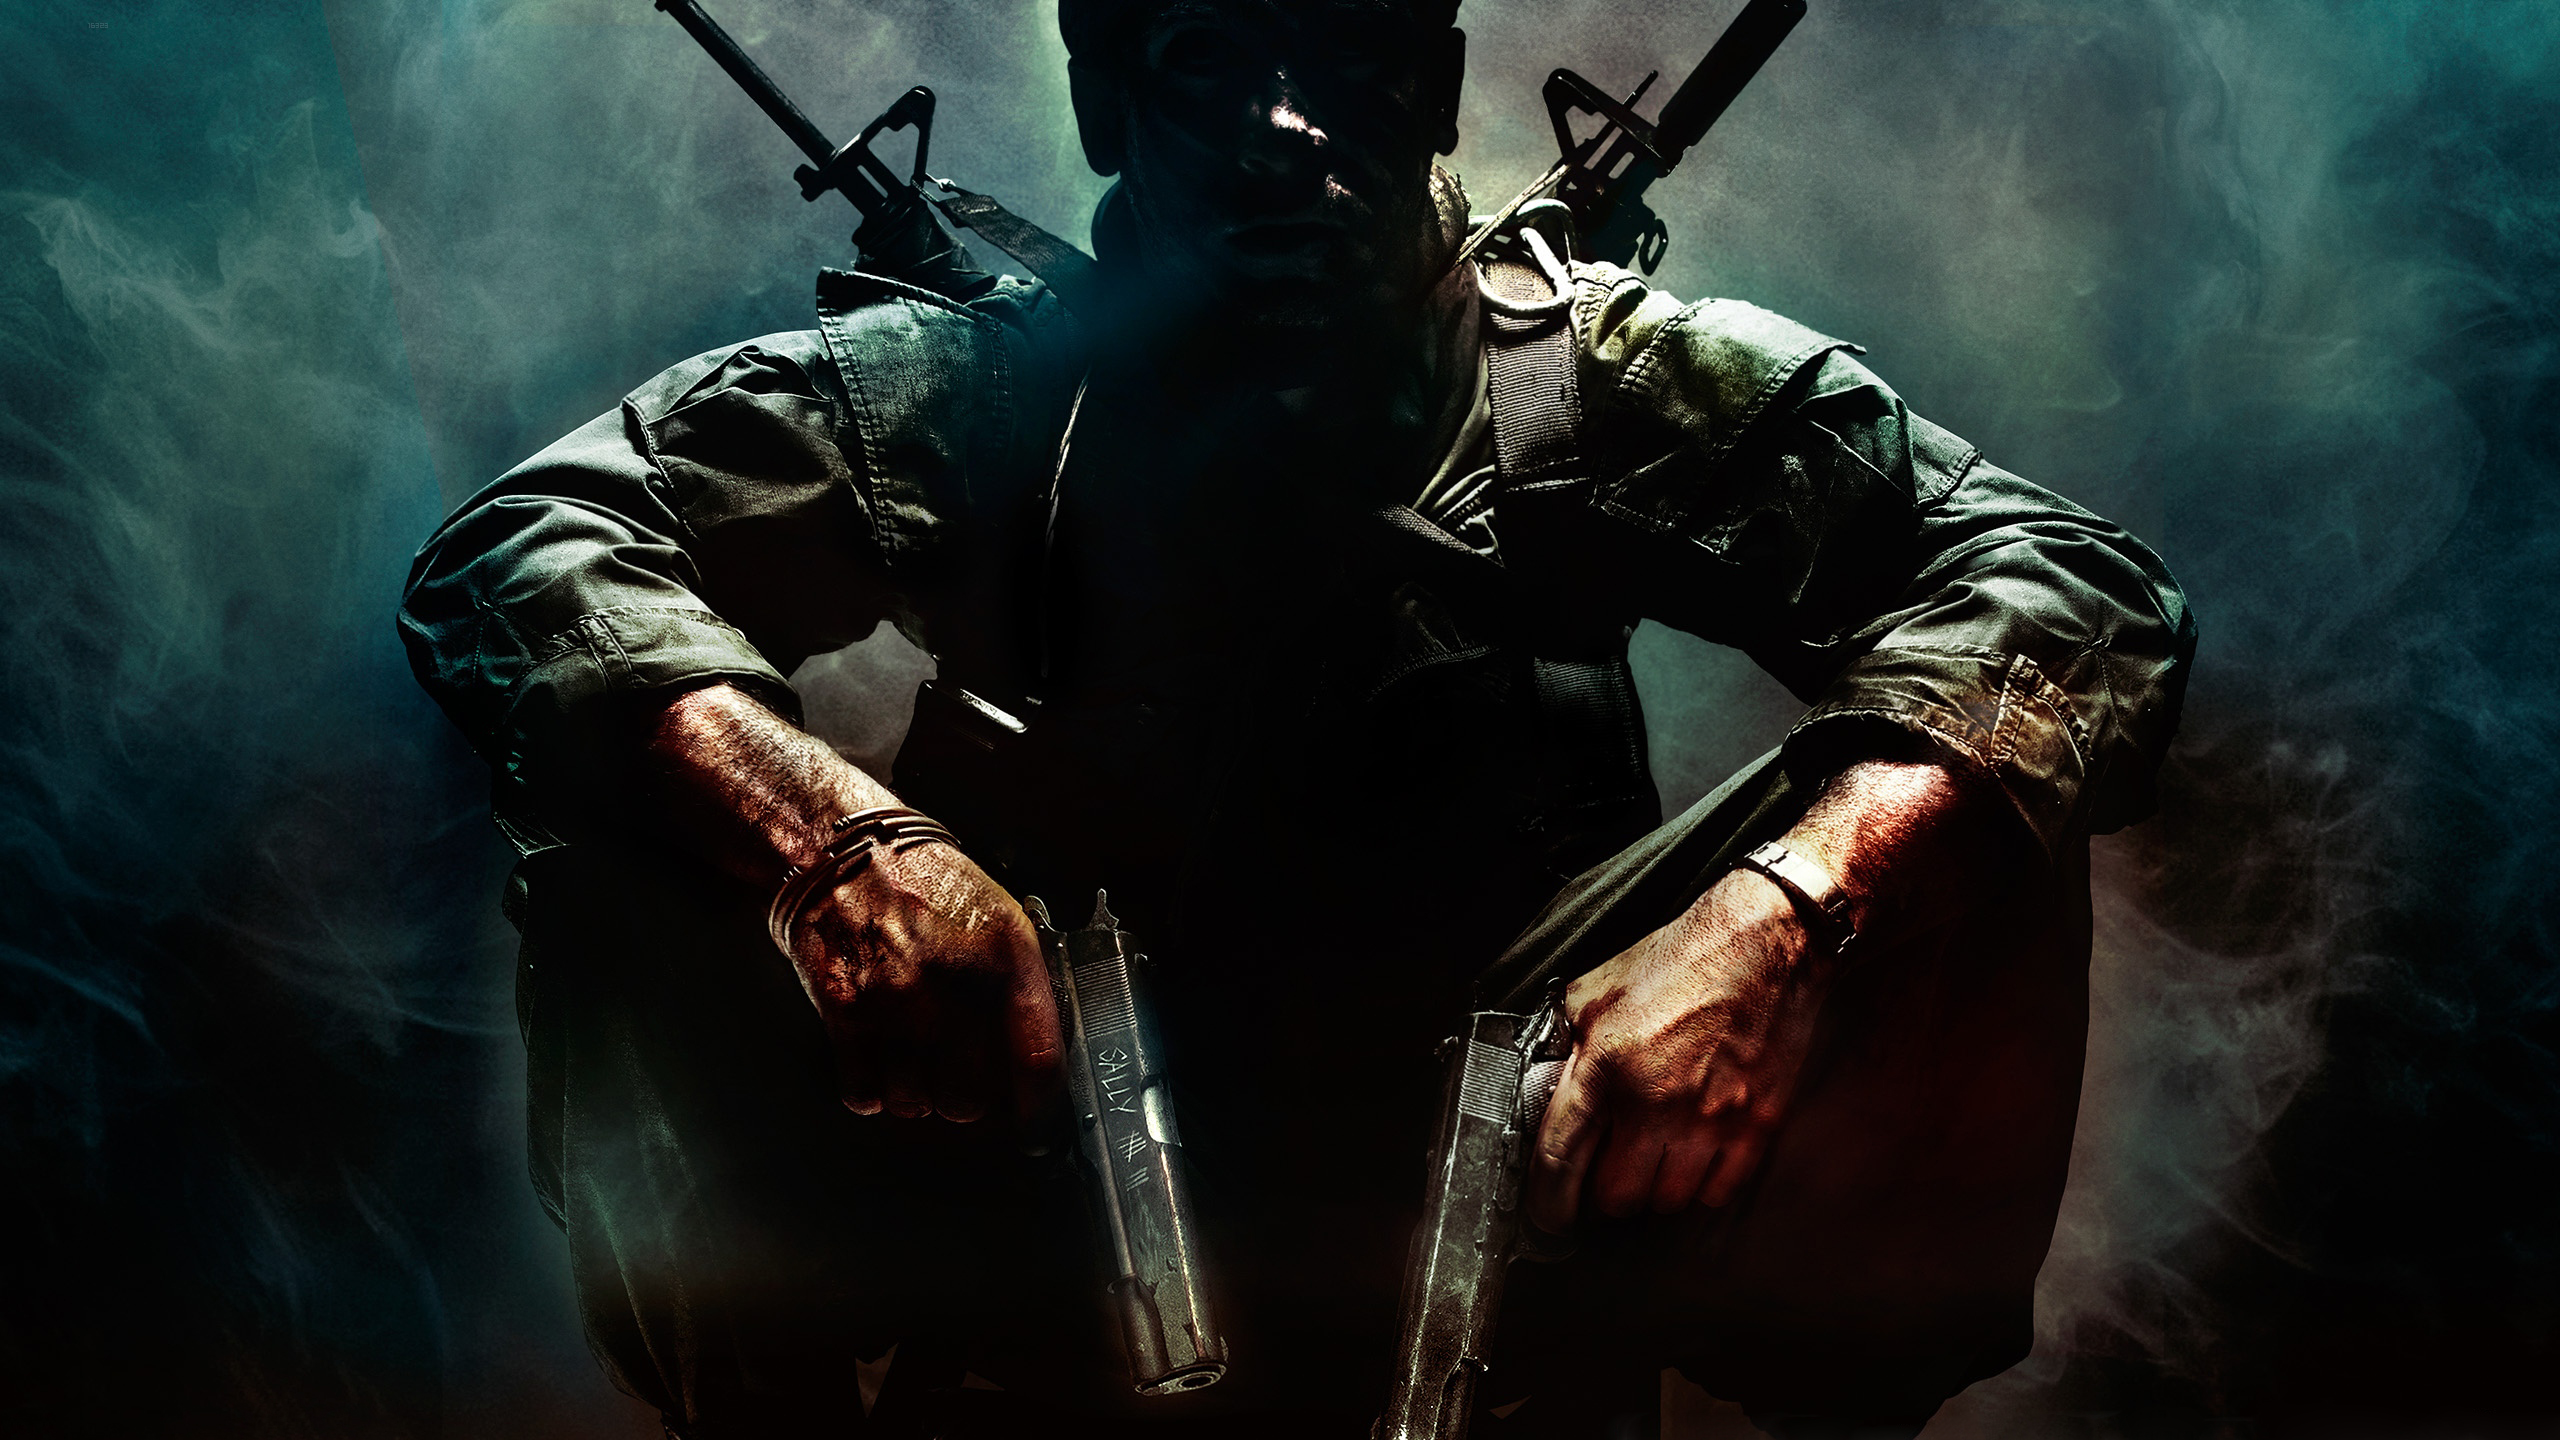 Melhores papéis de parede de Call Of Duty: Black Ops para tela do telefone